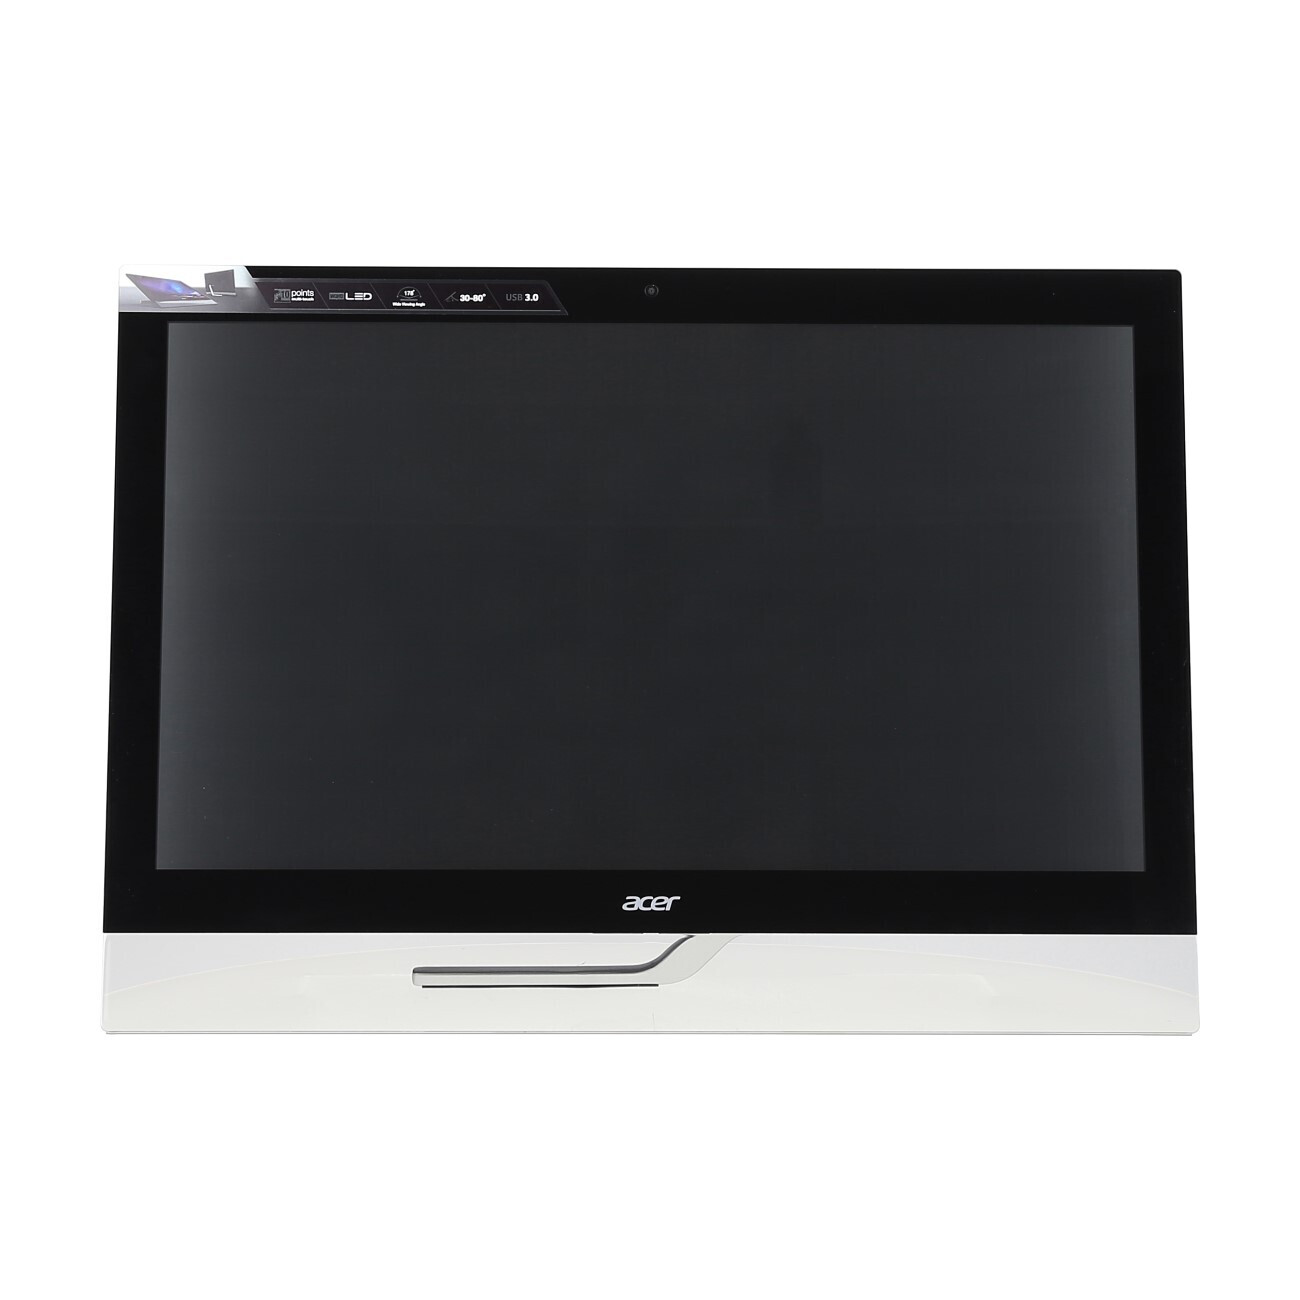 Vorschau: Acer T272HUL - Touch Monitor - Demoware